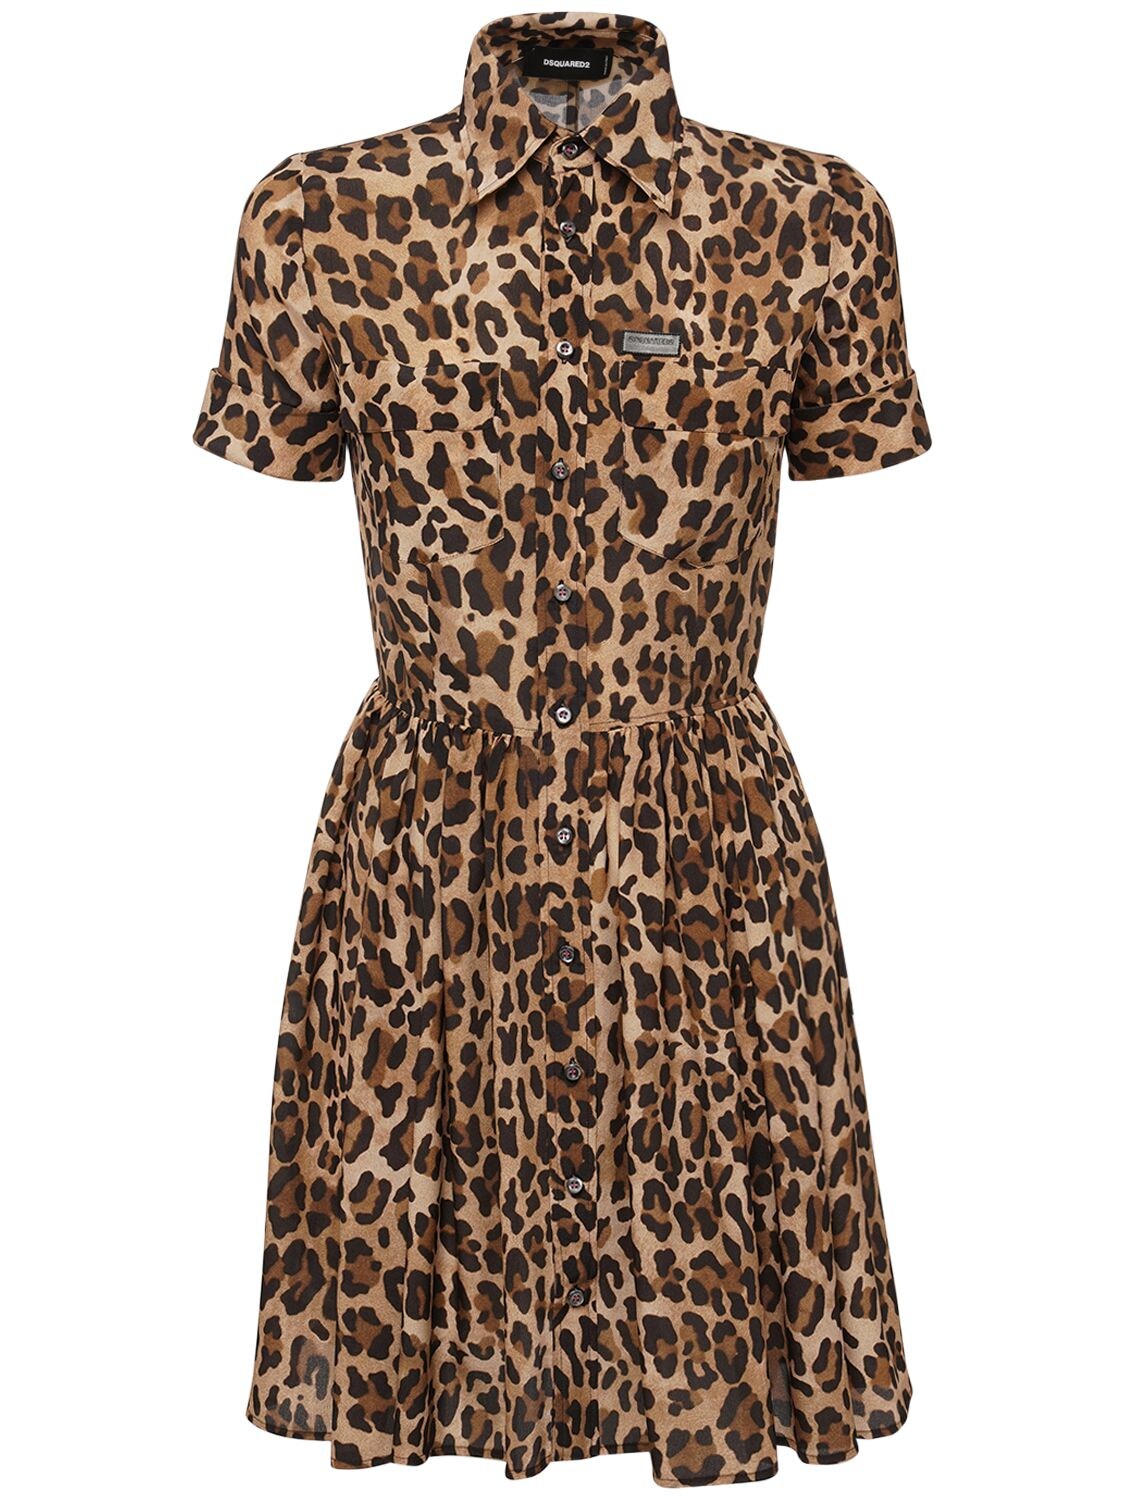 Leopard Print Crepe De Chine Dress